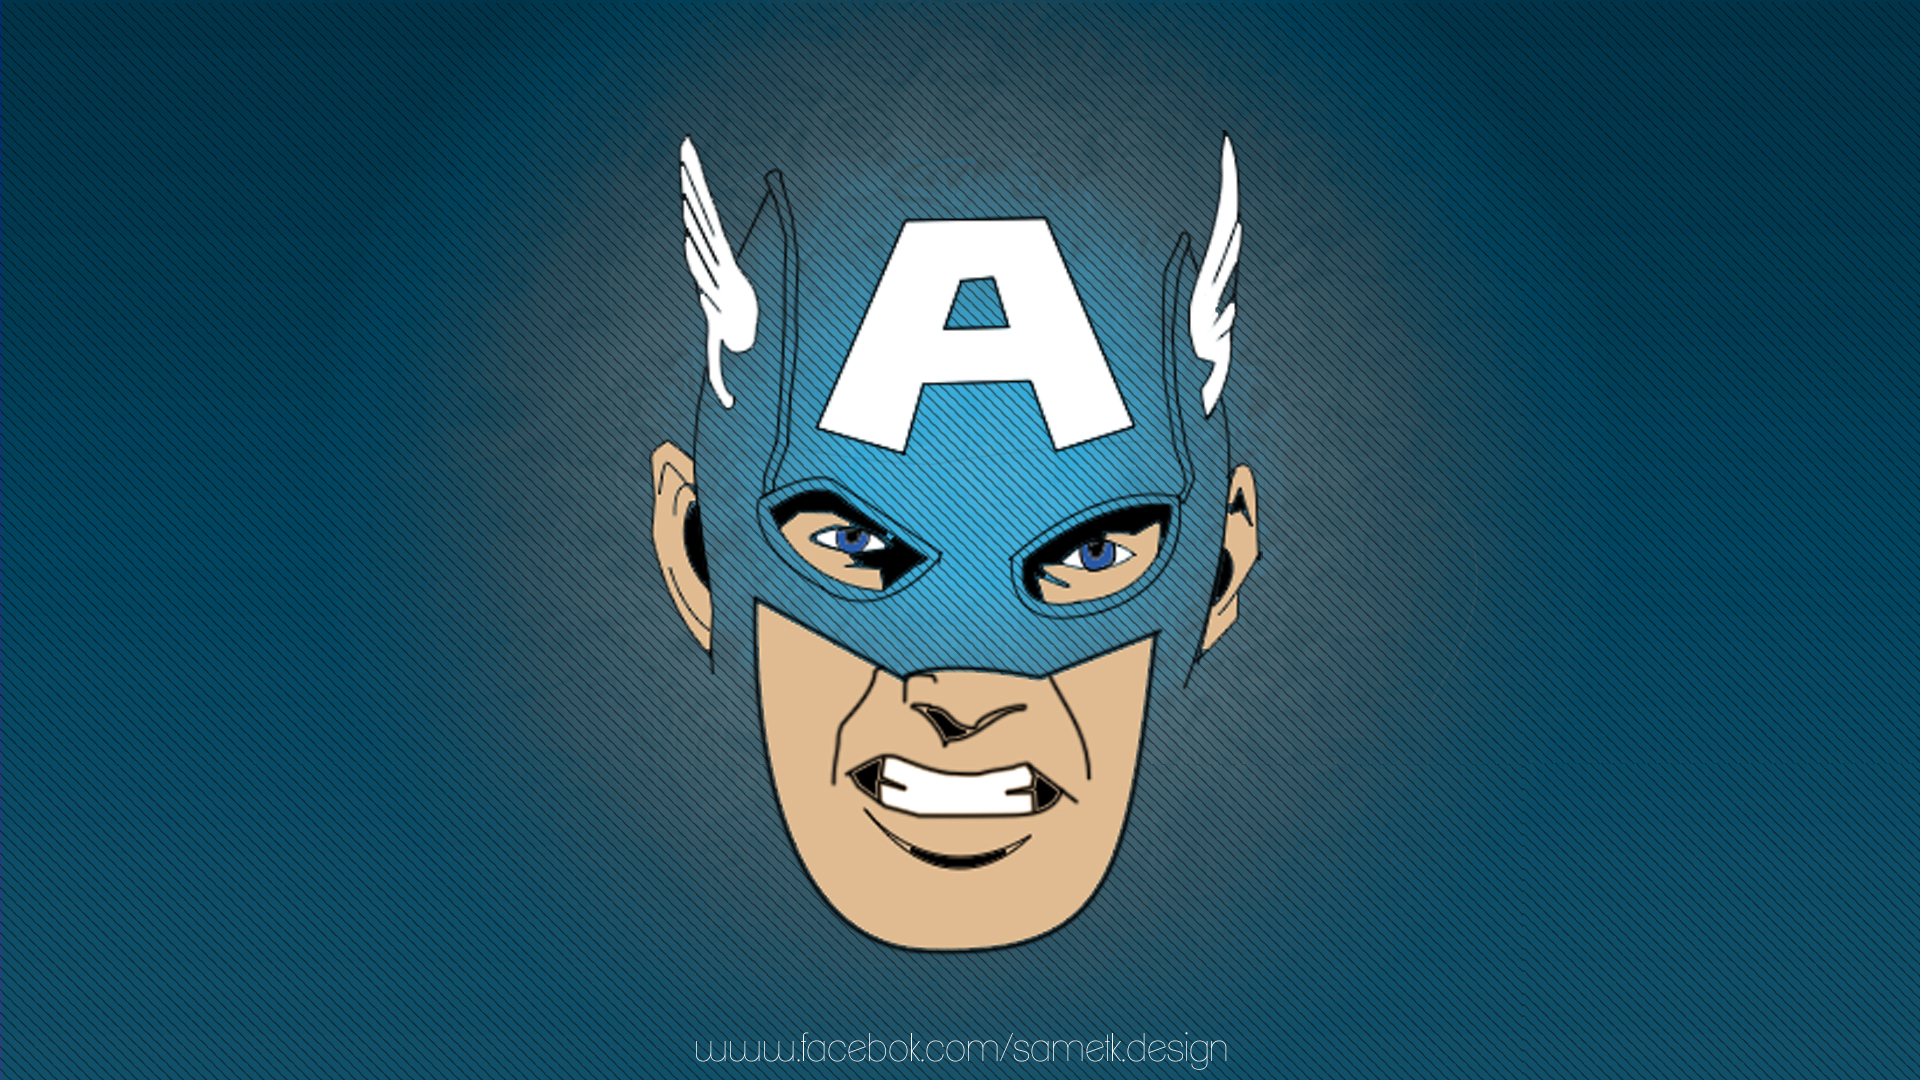 Captain America Wallpaper Cartoon by sametklyc on DeviantArt